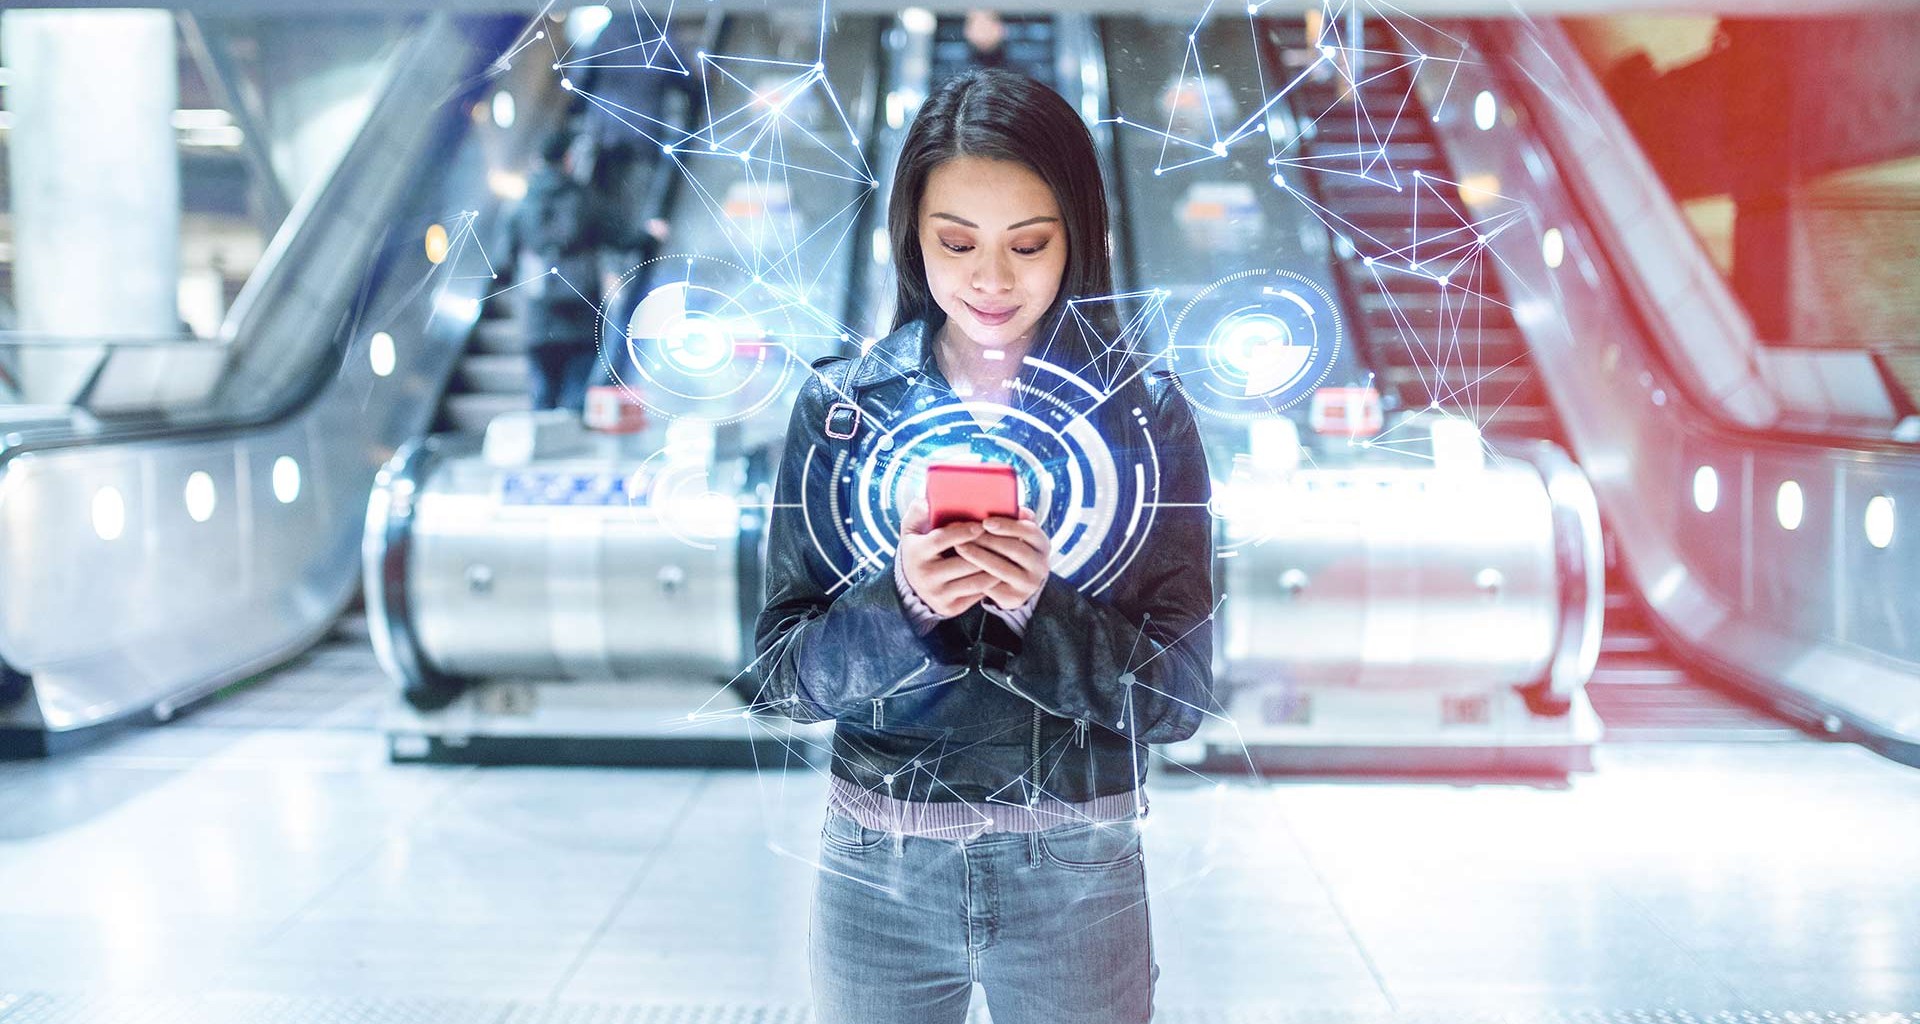 Chica con celular en mano, en la ilustración hay hologramas alrededor para representar la realidad aumentada